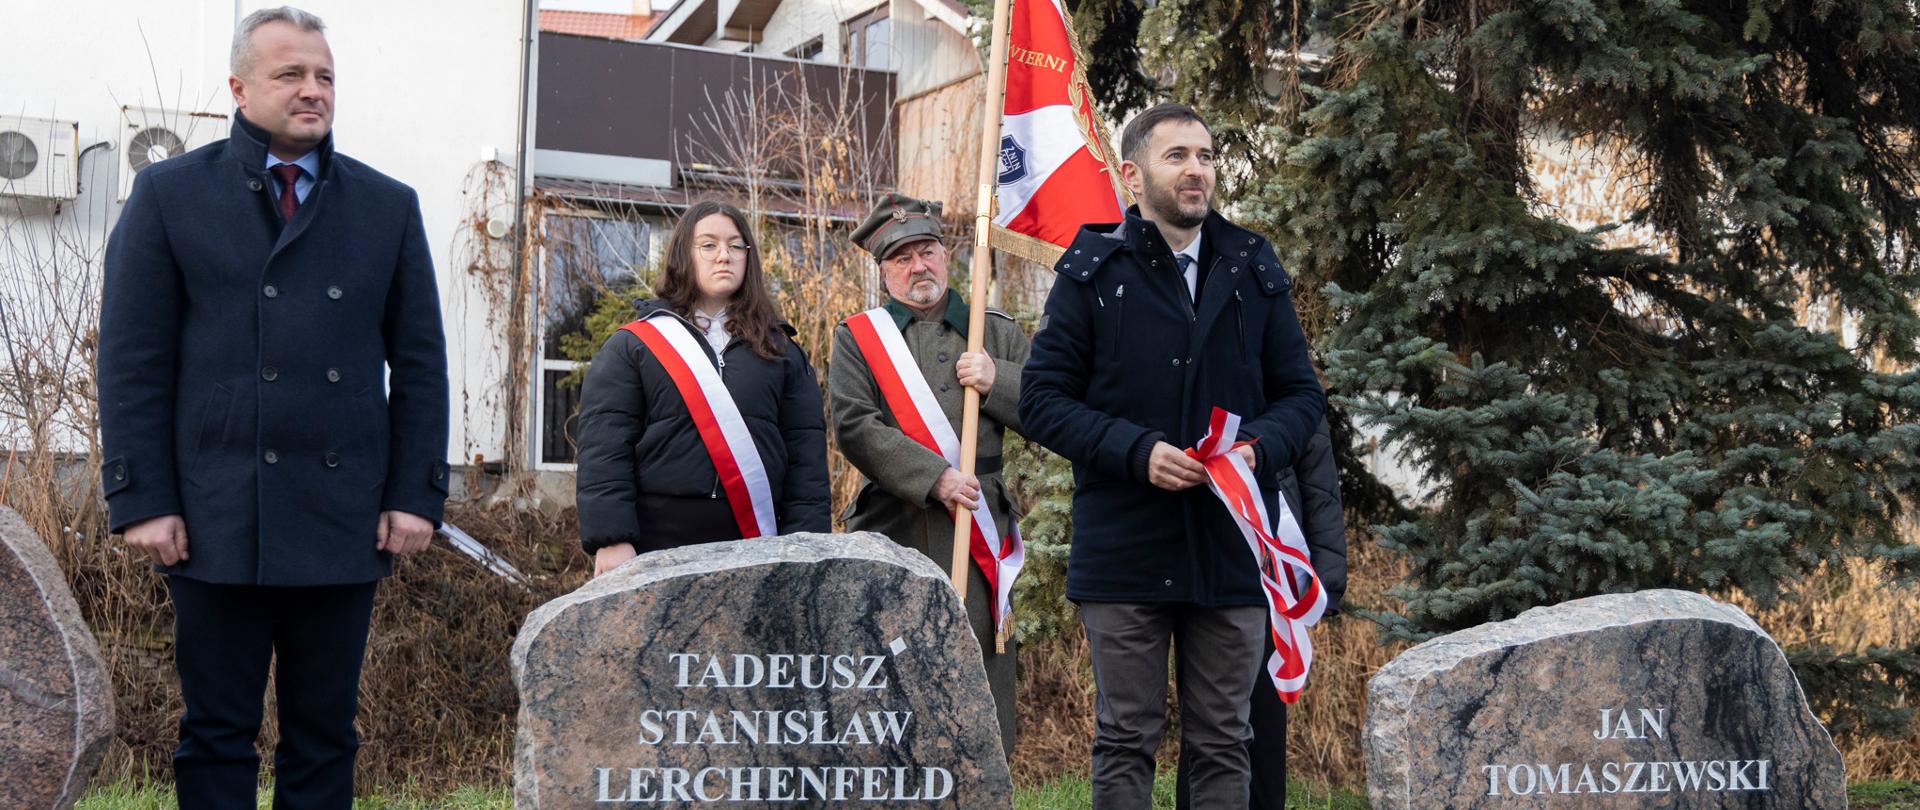 
Grupa ludzi stojąca przy kamiennych tablicach upamiętniających bohaterów Powstania Wielkopolskiego
